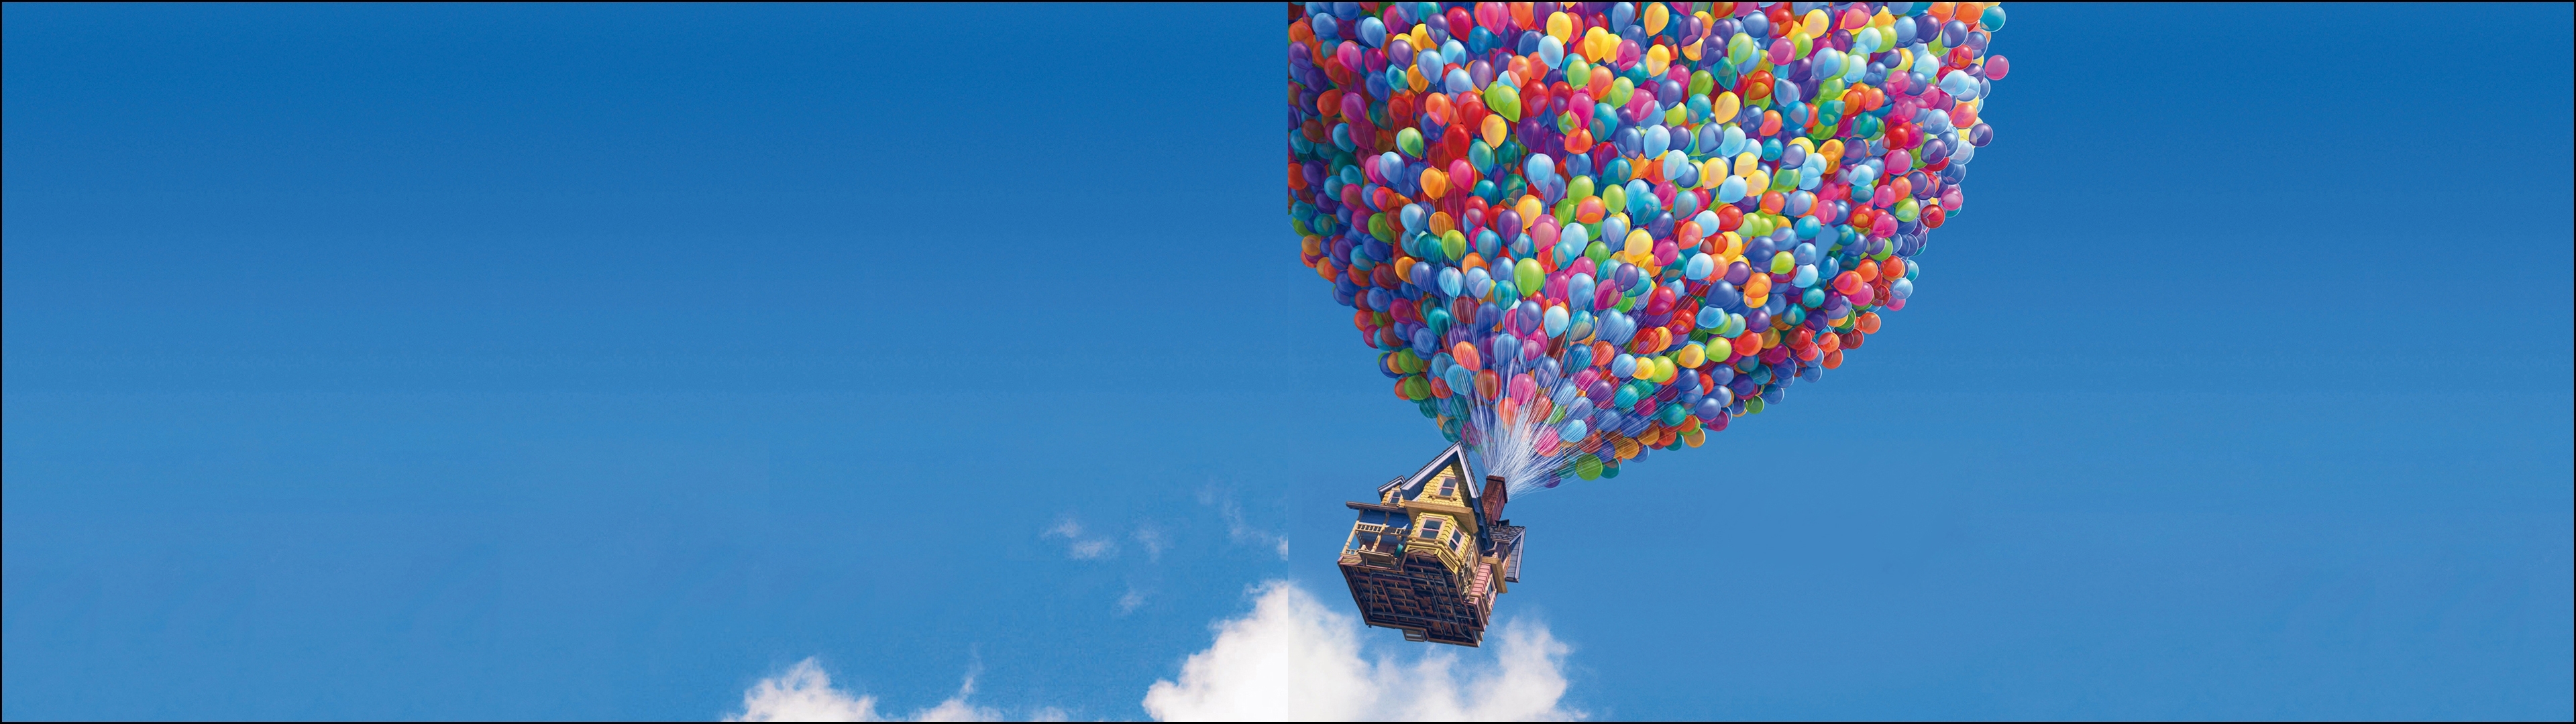 Pixar Up Movie Wallpaper Best Top